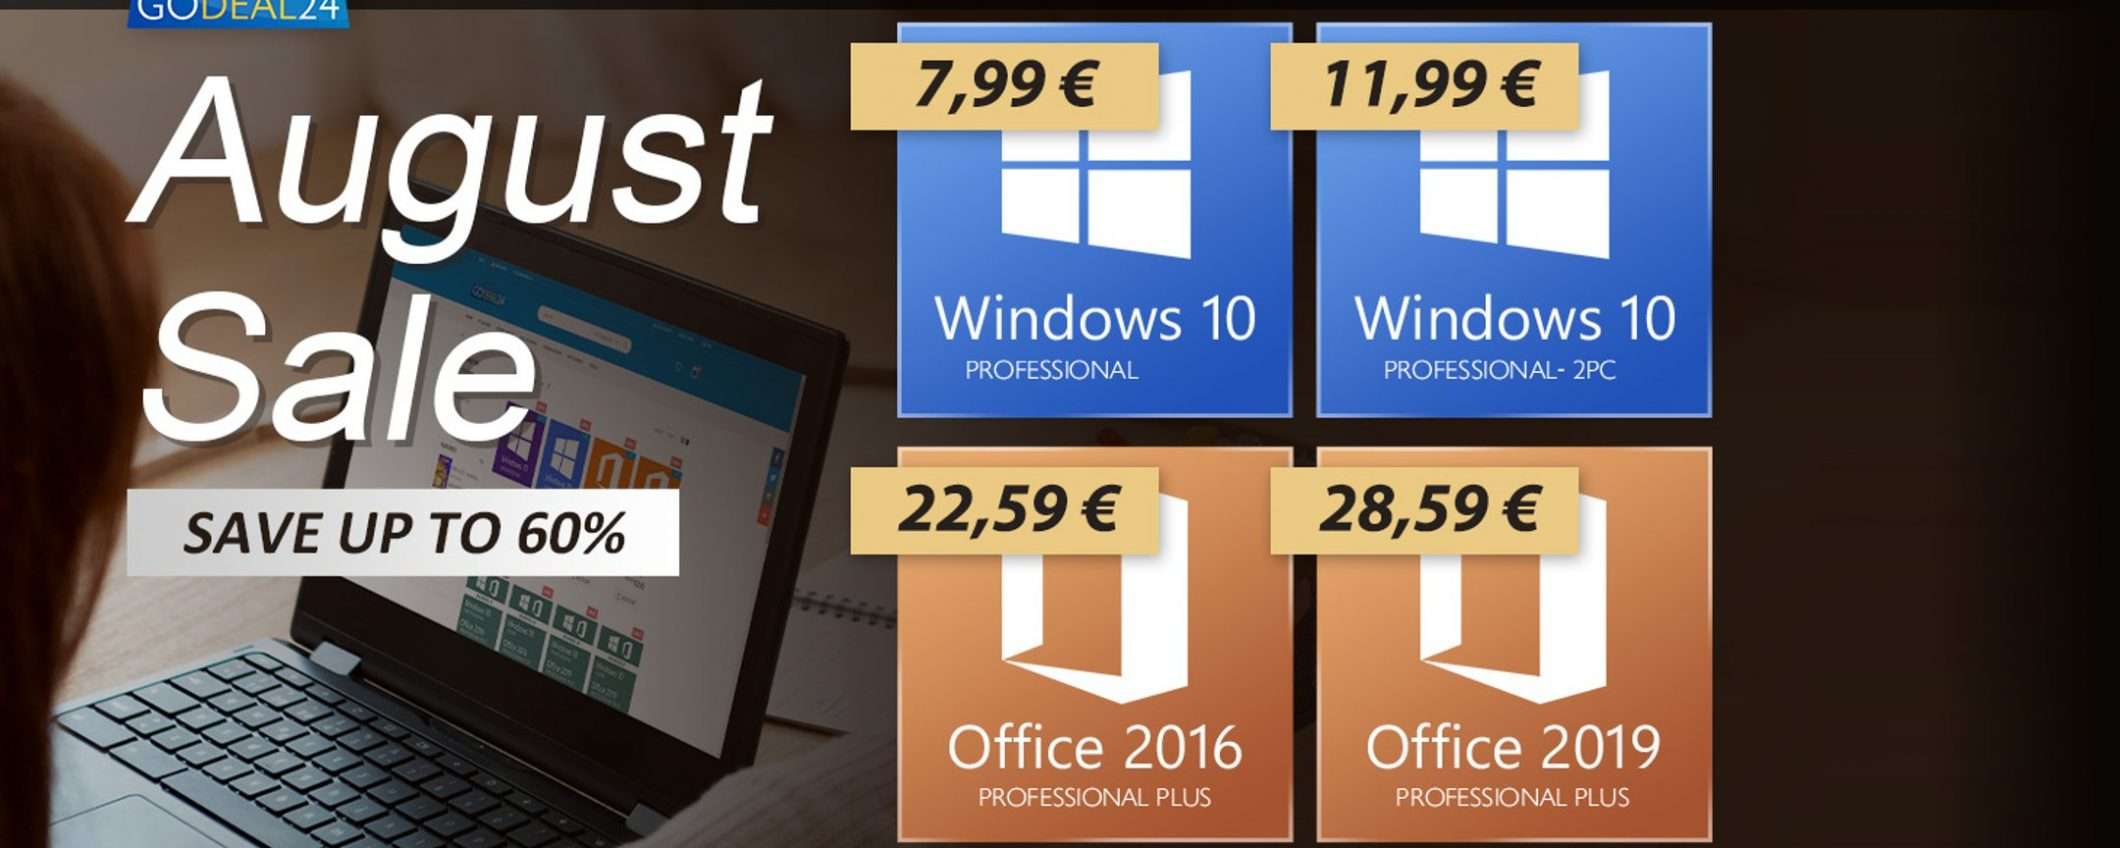 Saldi di Agosto: Windows 10 solo 6€, Office solo 15€